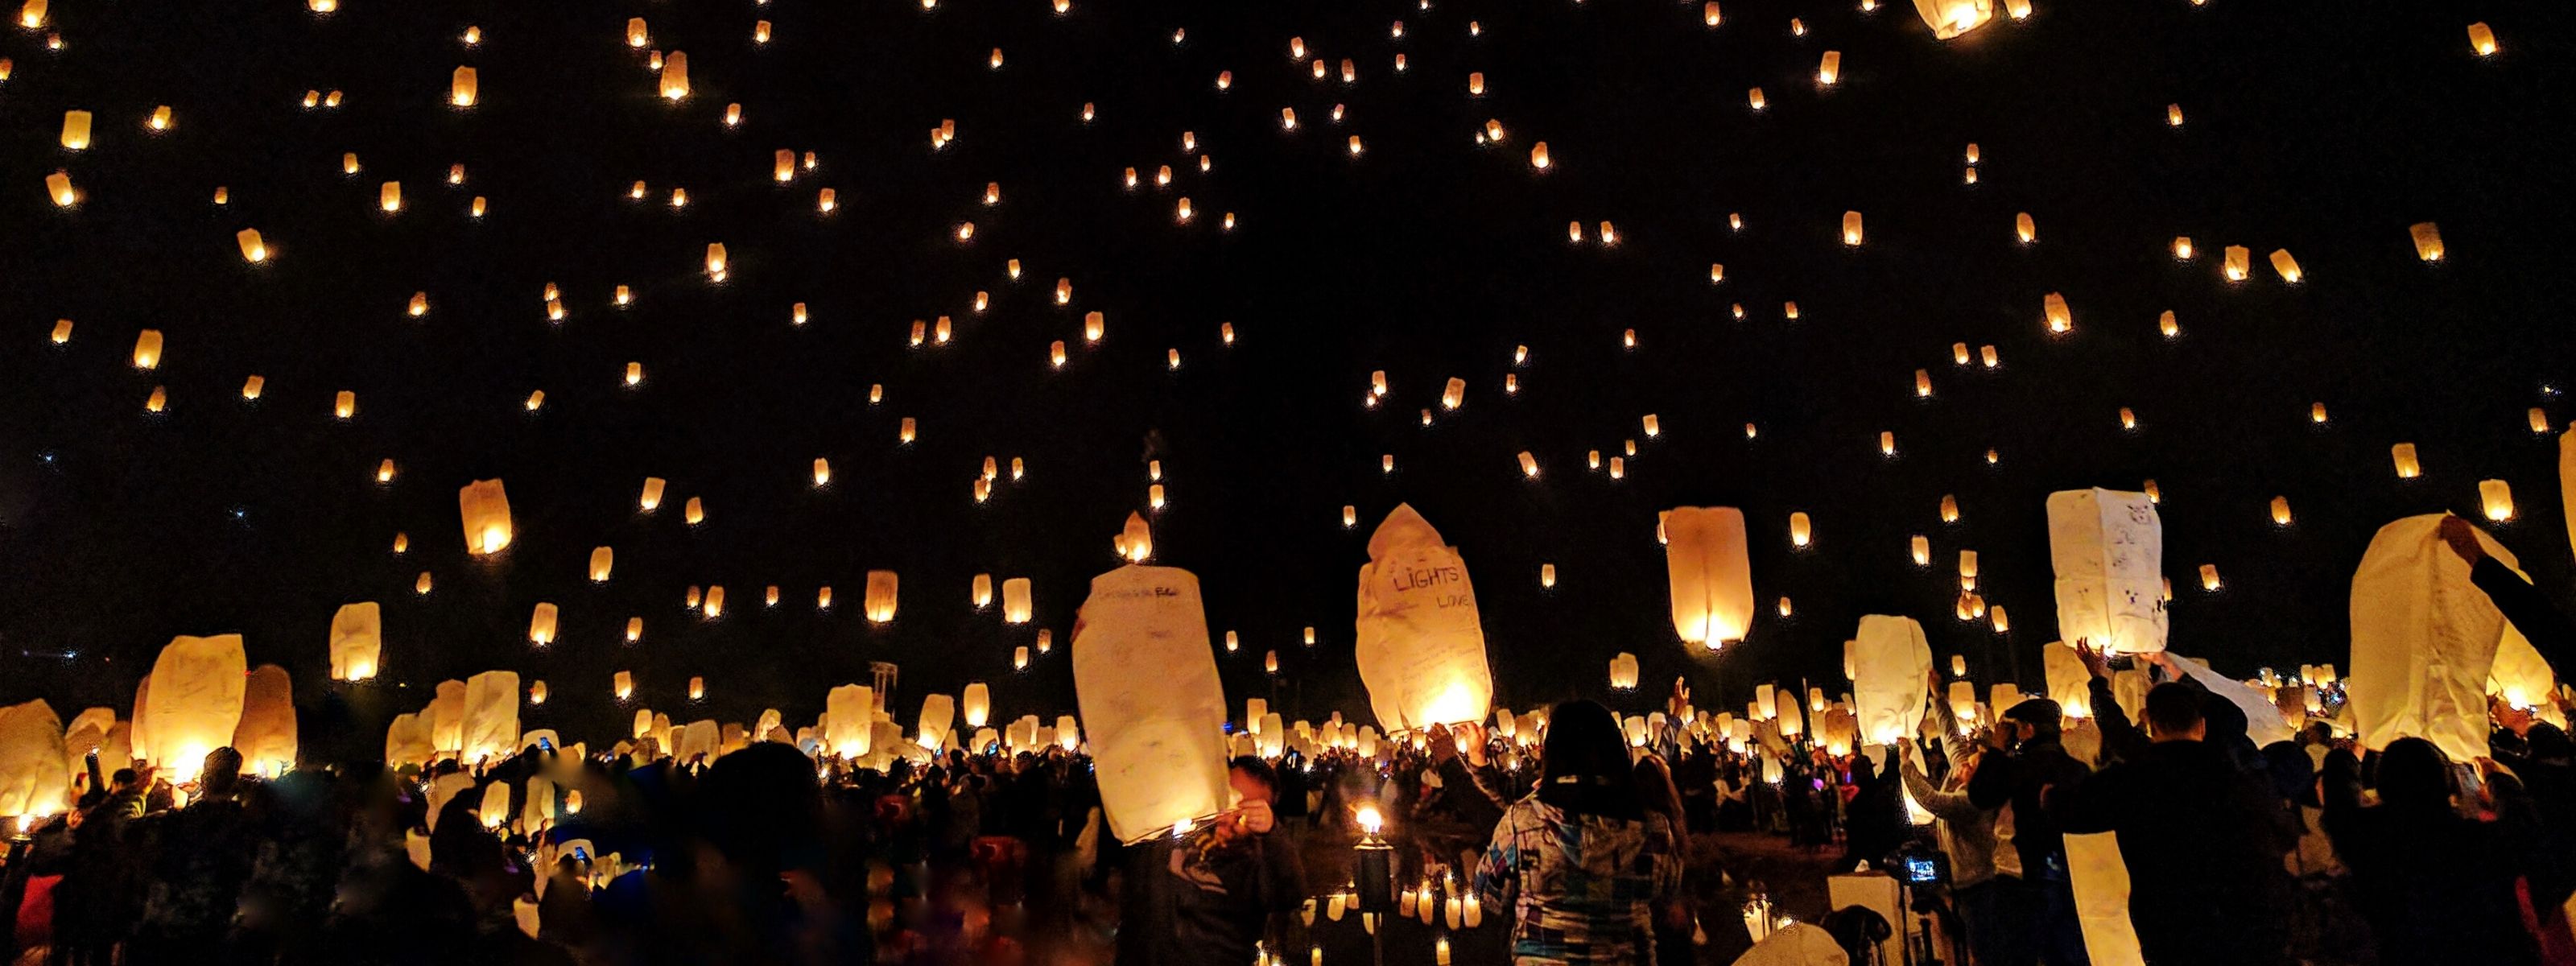 Setki lampionów świetlnych puszczane przez ludzi o zmroku.